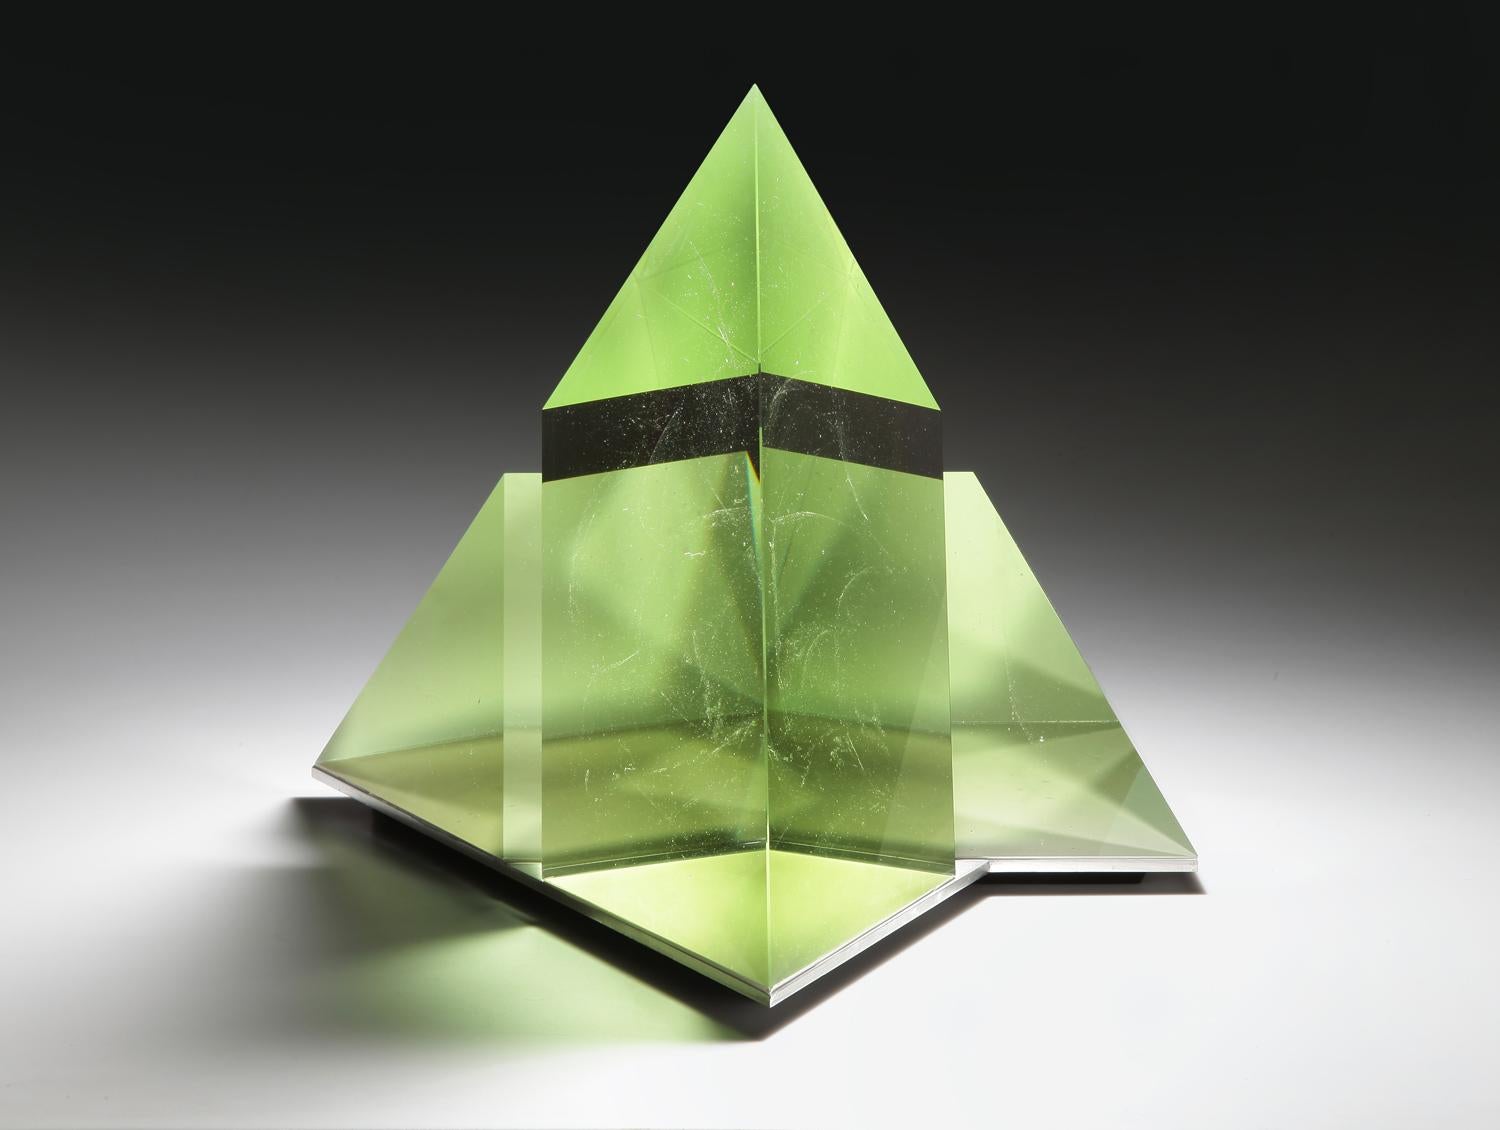 Josef Marek Abstract Sculpture - "Clean" cast glass sculpture